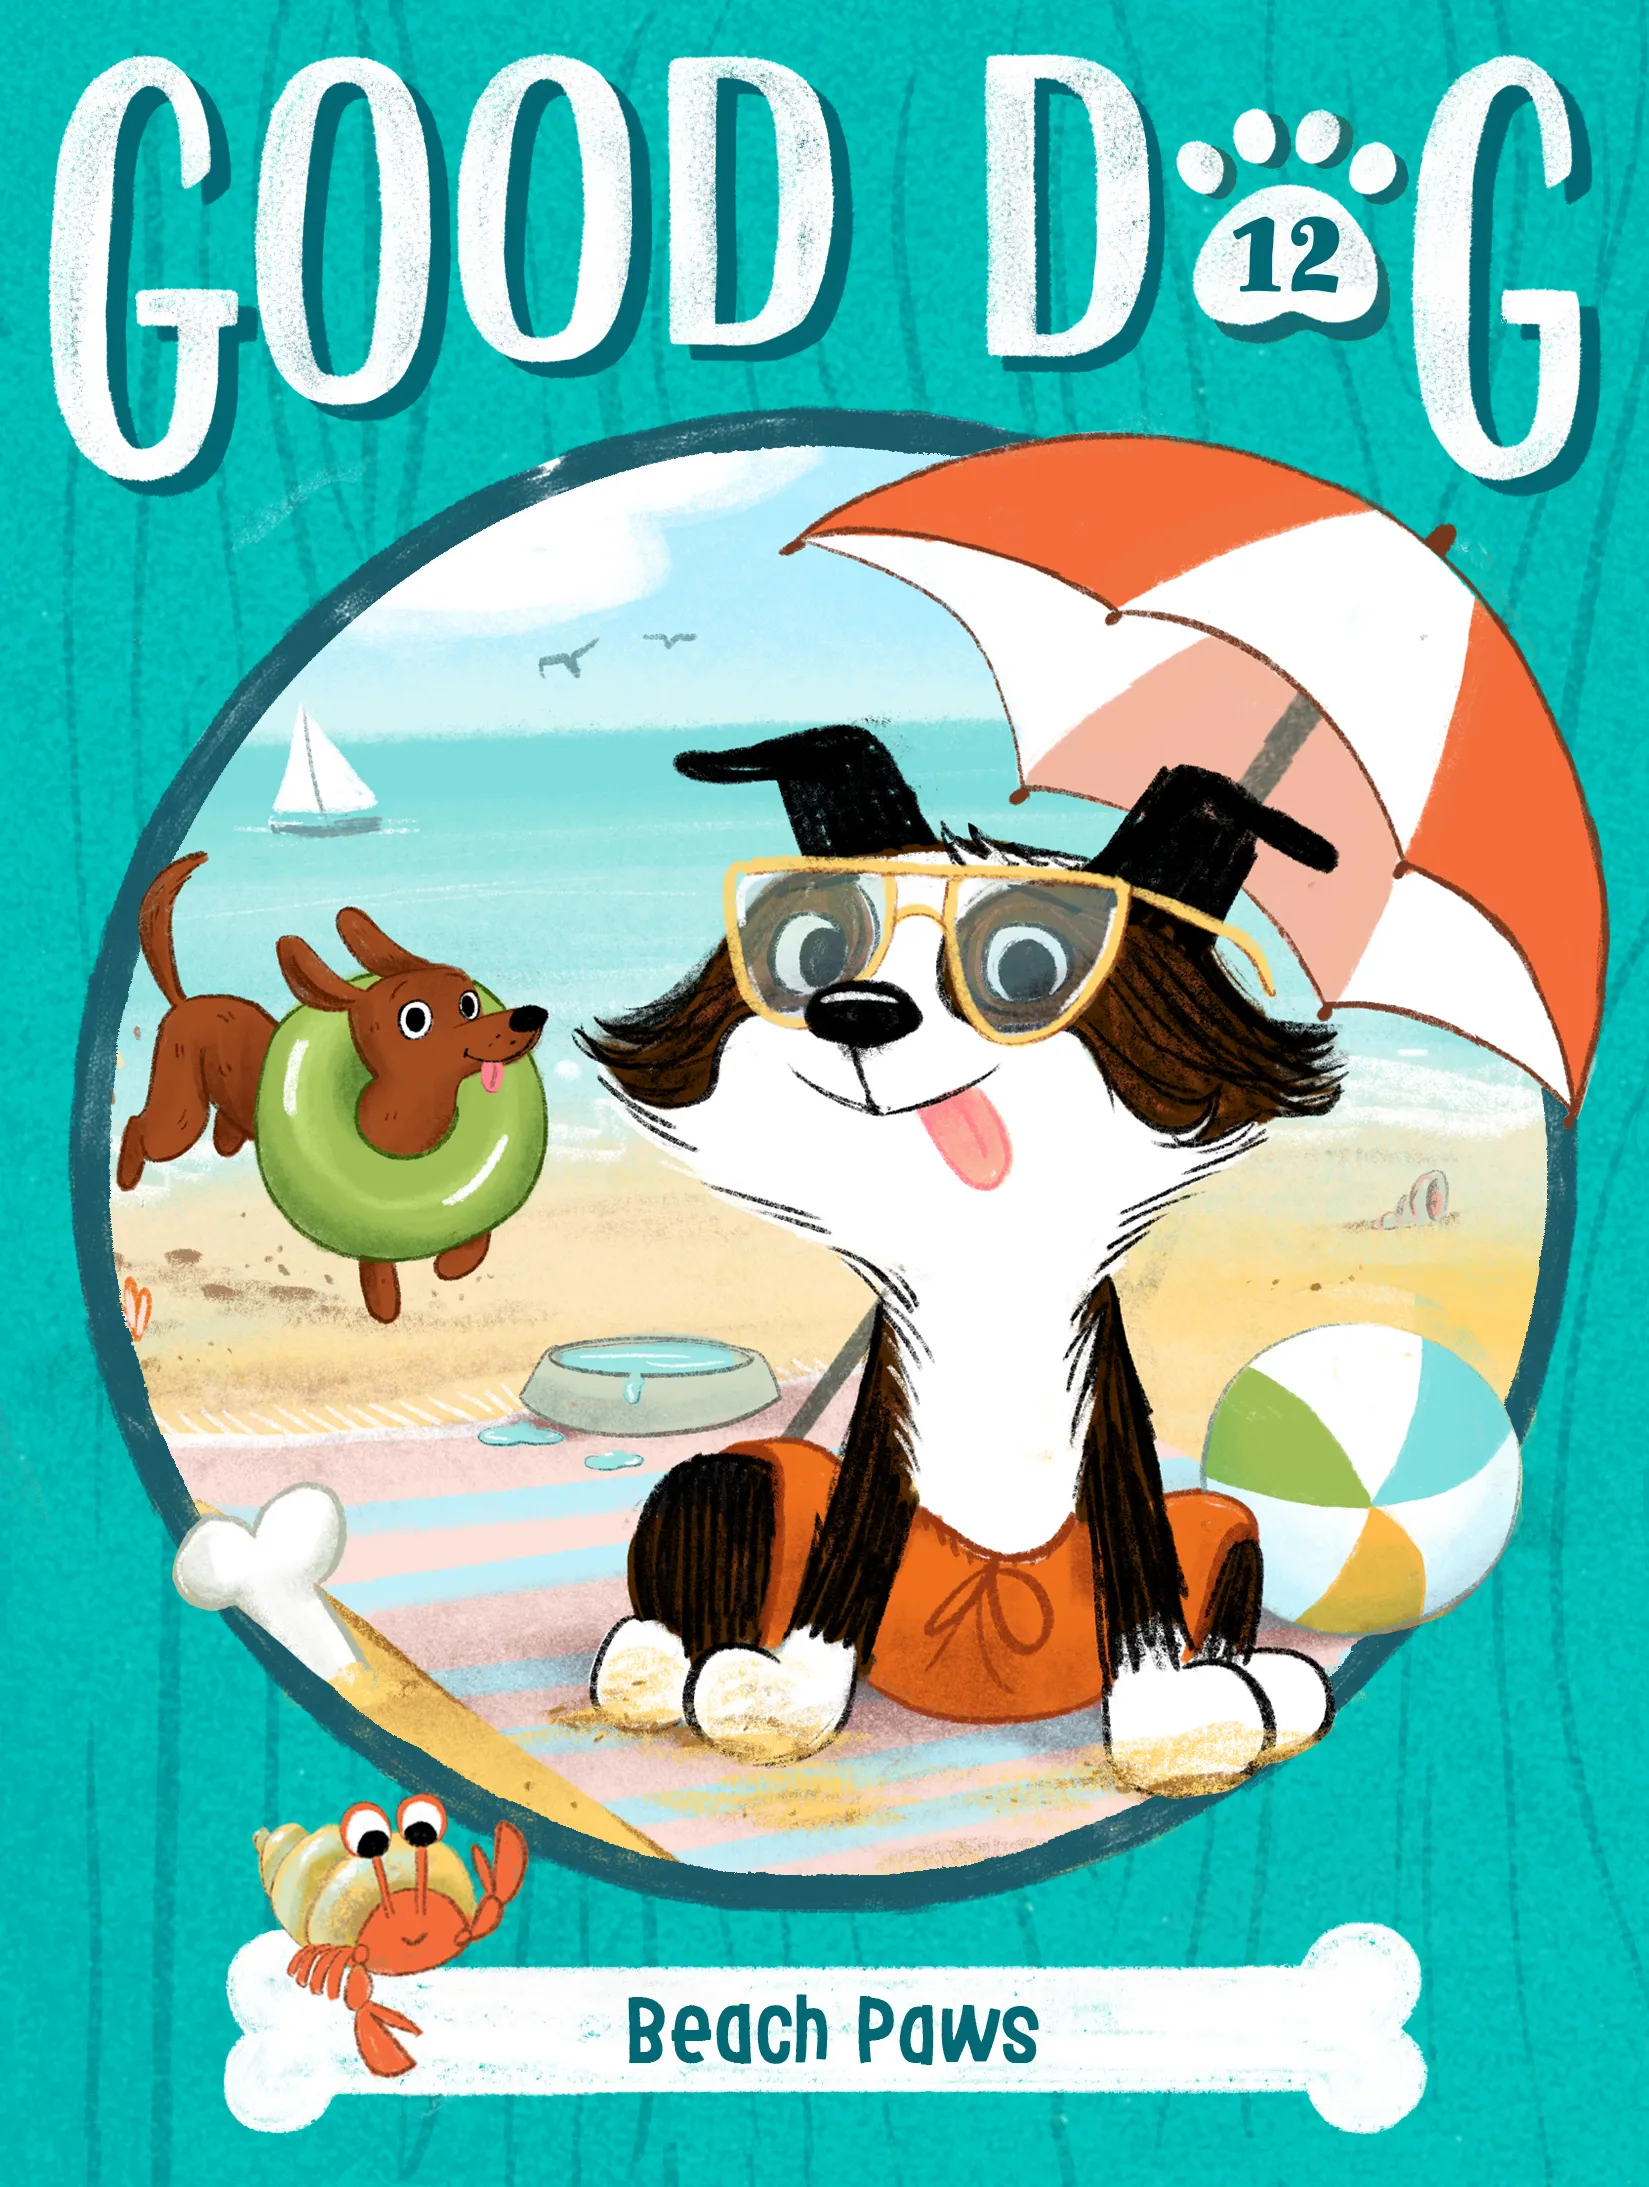 Beach Paws (Good Dog #12)